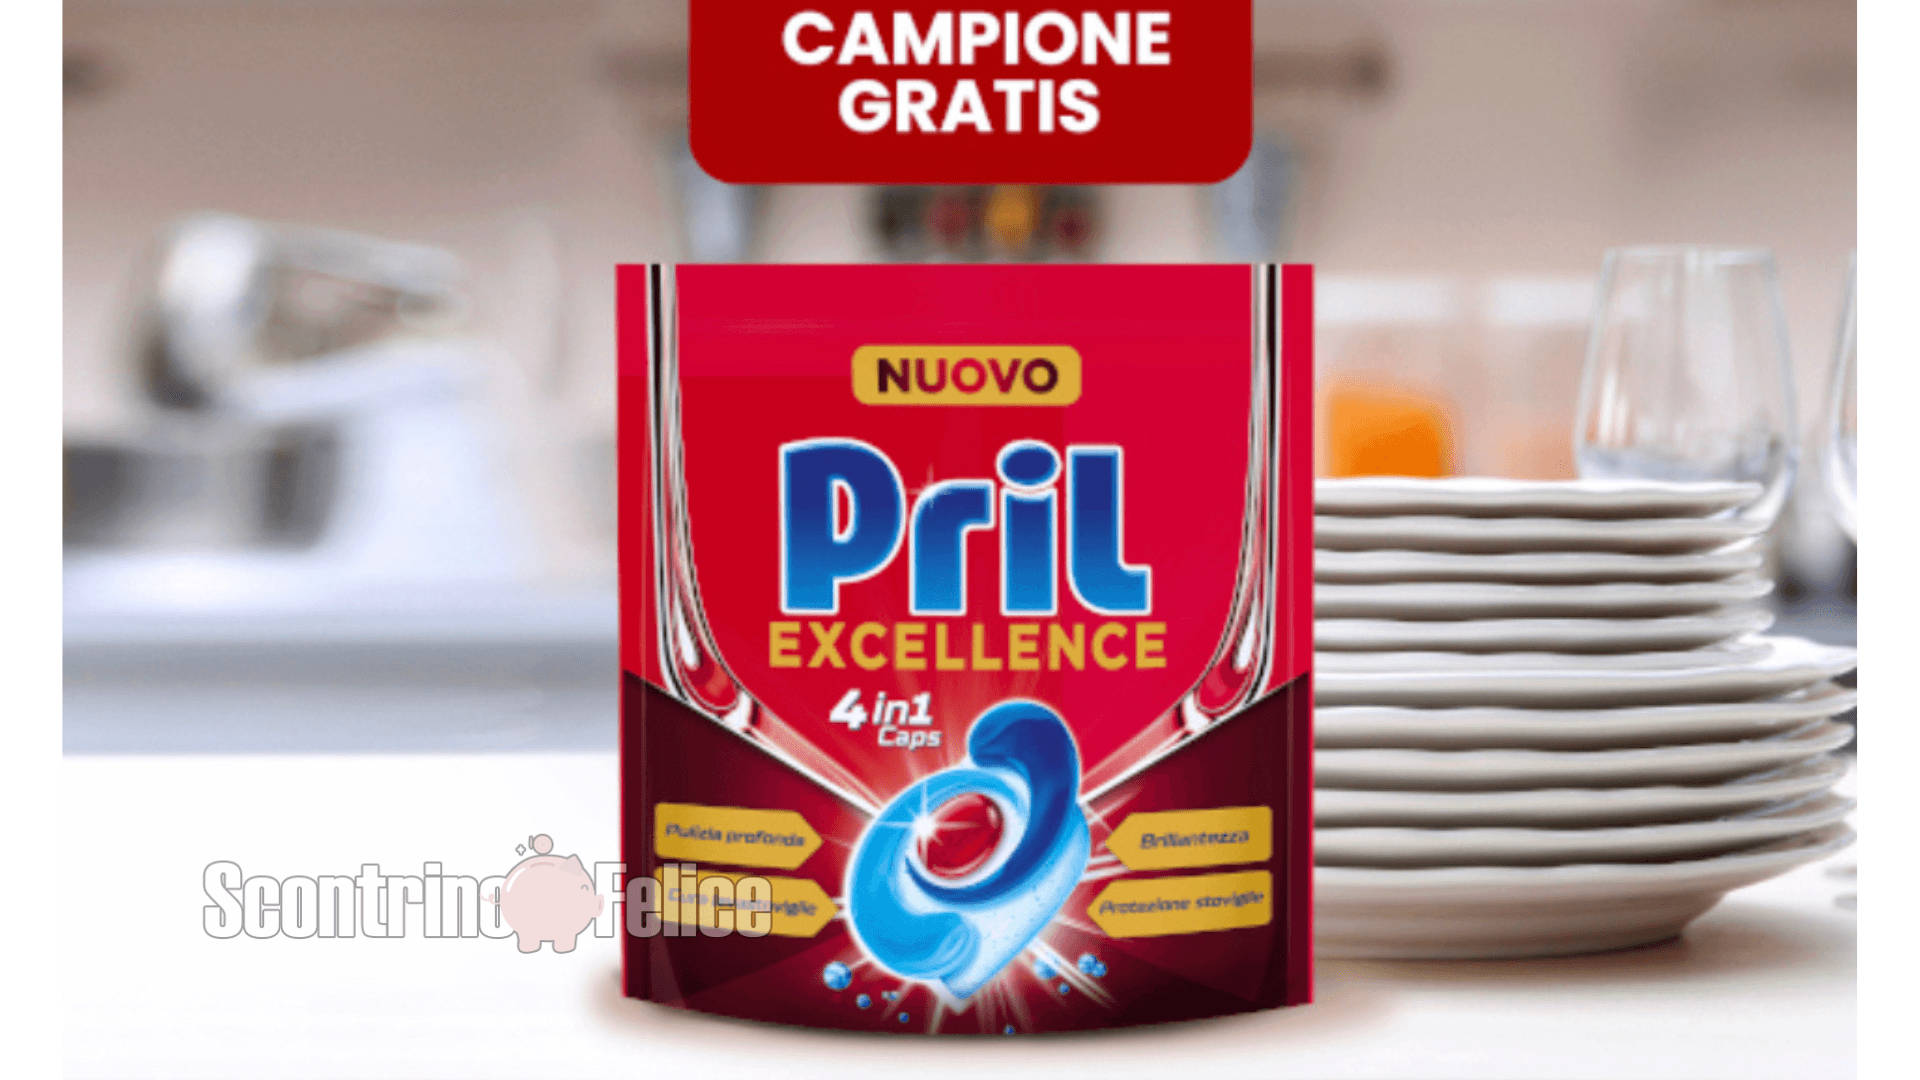 Pril Excellence 4in1 Caps: richiedi subito il campione gratuito! 3